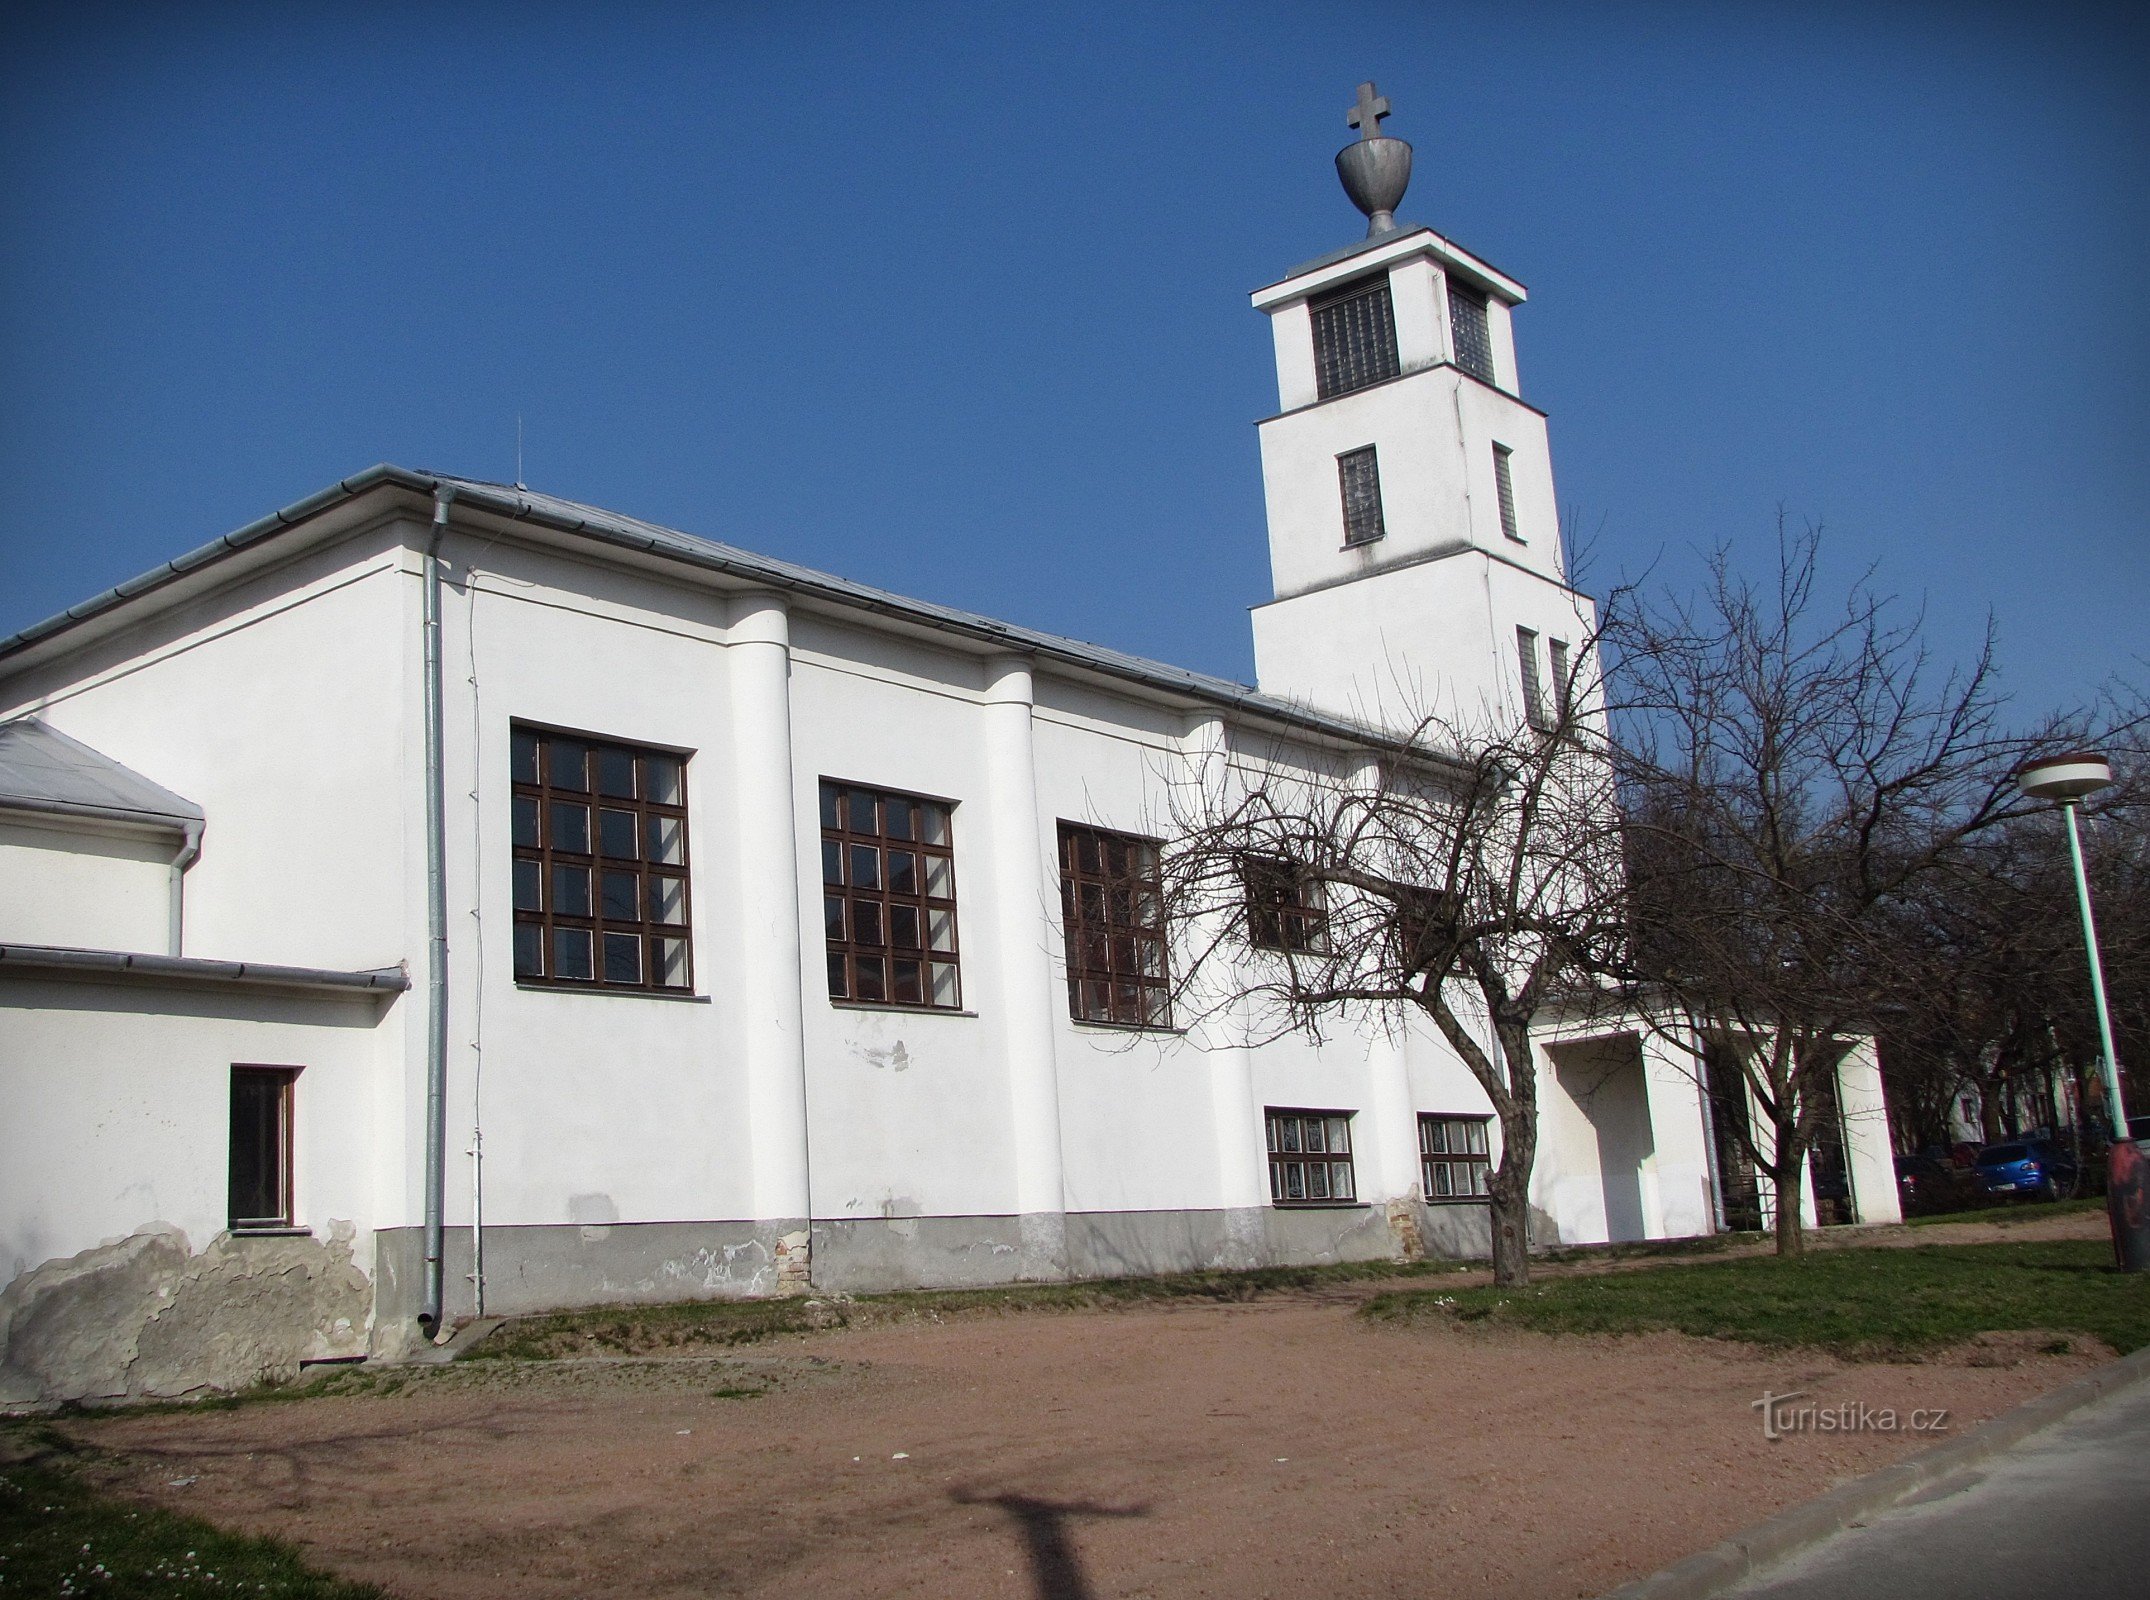 Кийов - церква конгрегації гуситів